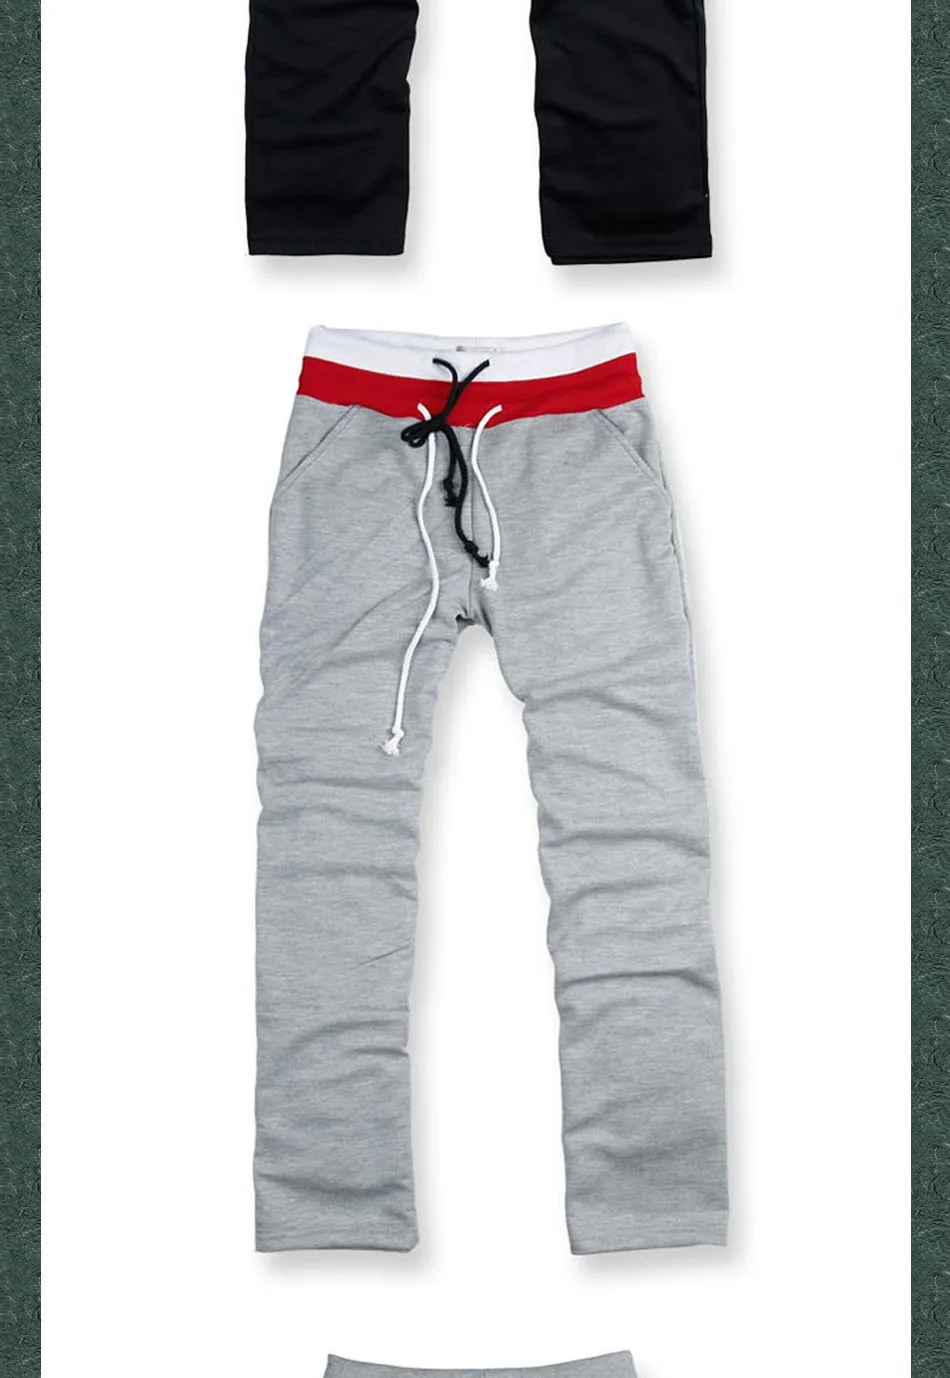 Г. модные летние Открытый Тонкий Подрезанные штаны Для мужчин хип-хоп двойной талии свободные спортивные для бега кроссовки мужские тренировочные брюки